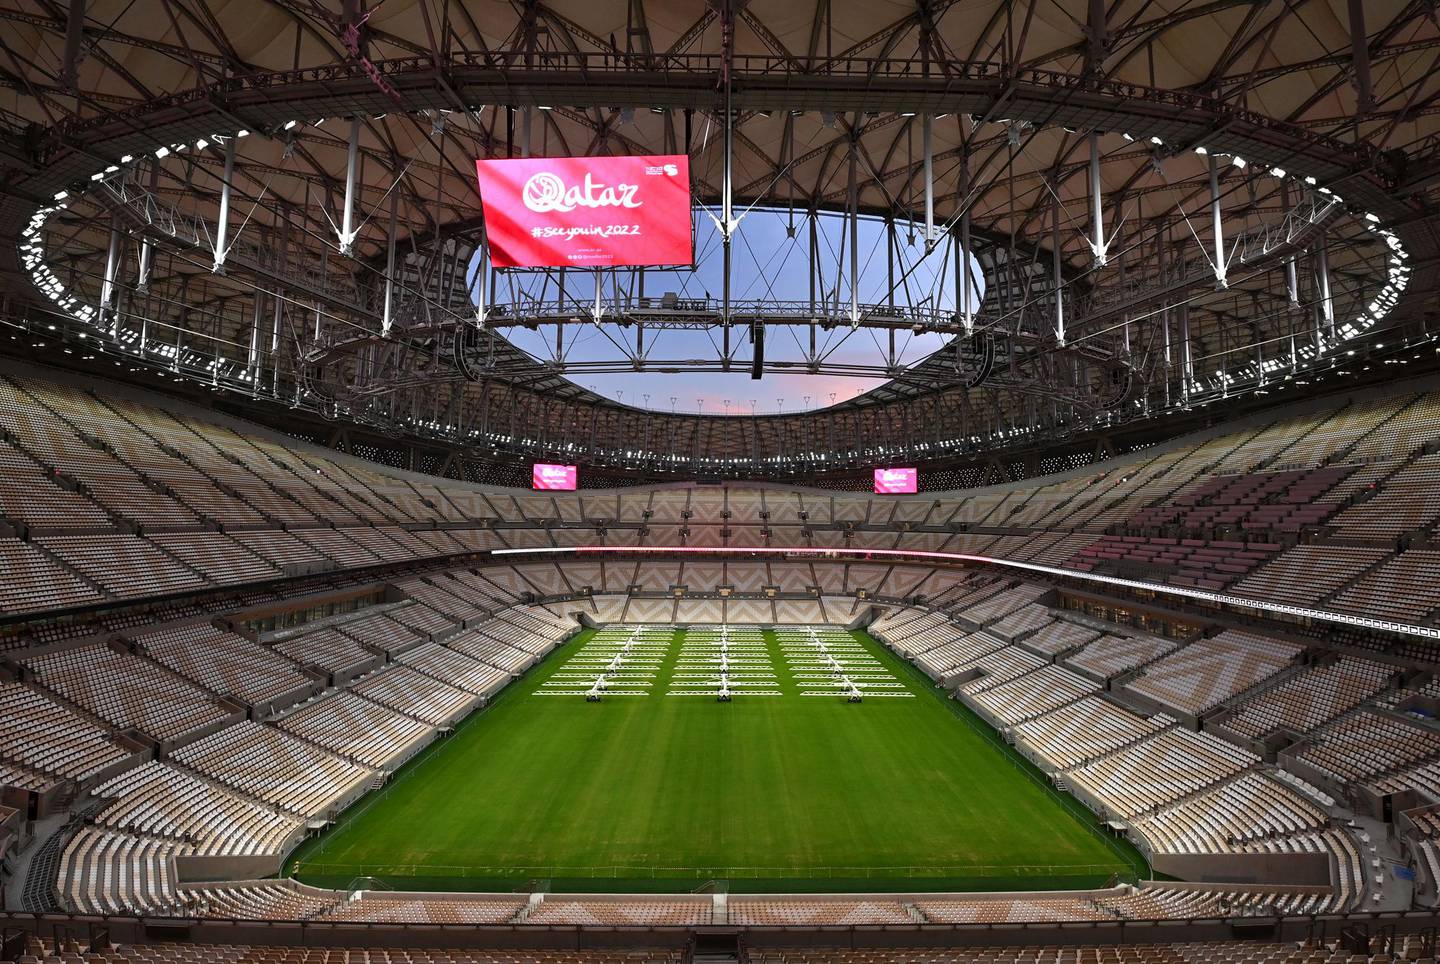 Vista general fuera del estadio Lusail sede de la final de la Copa Mundial de la FIFA 2022, durante la Copa Árabe de la FIFA Qatar, el 16 de diciembre de 2021 en Doha, Qatar. (Foto de Shaun Botterill/Getty Images)